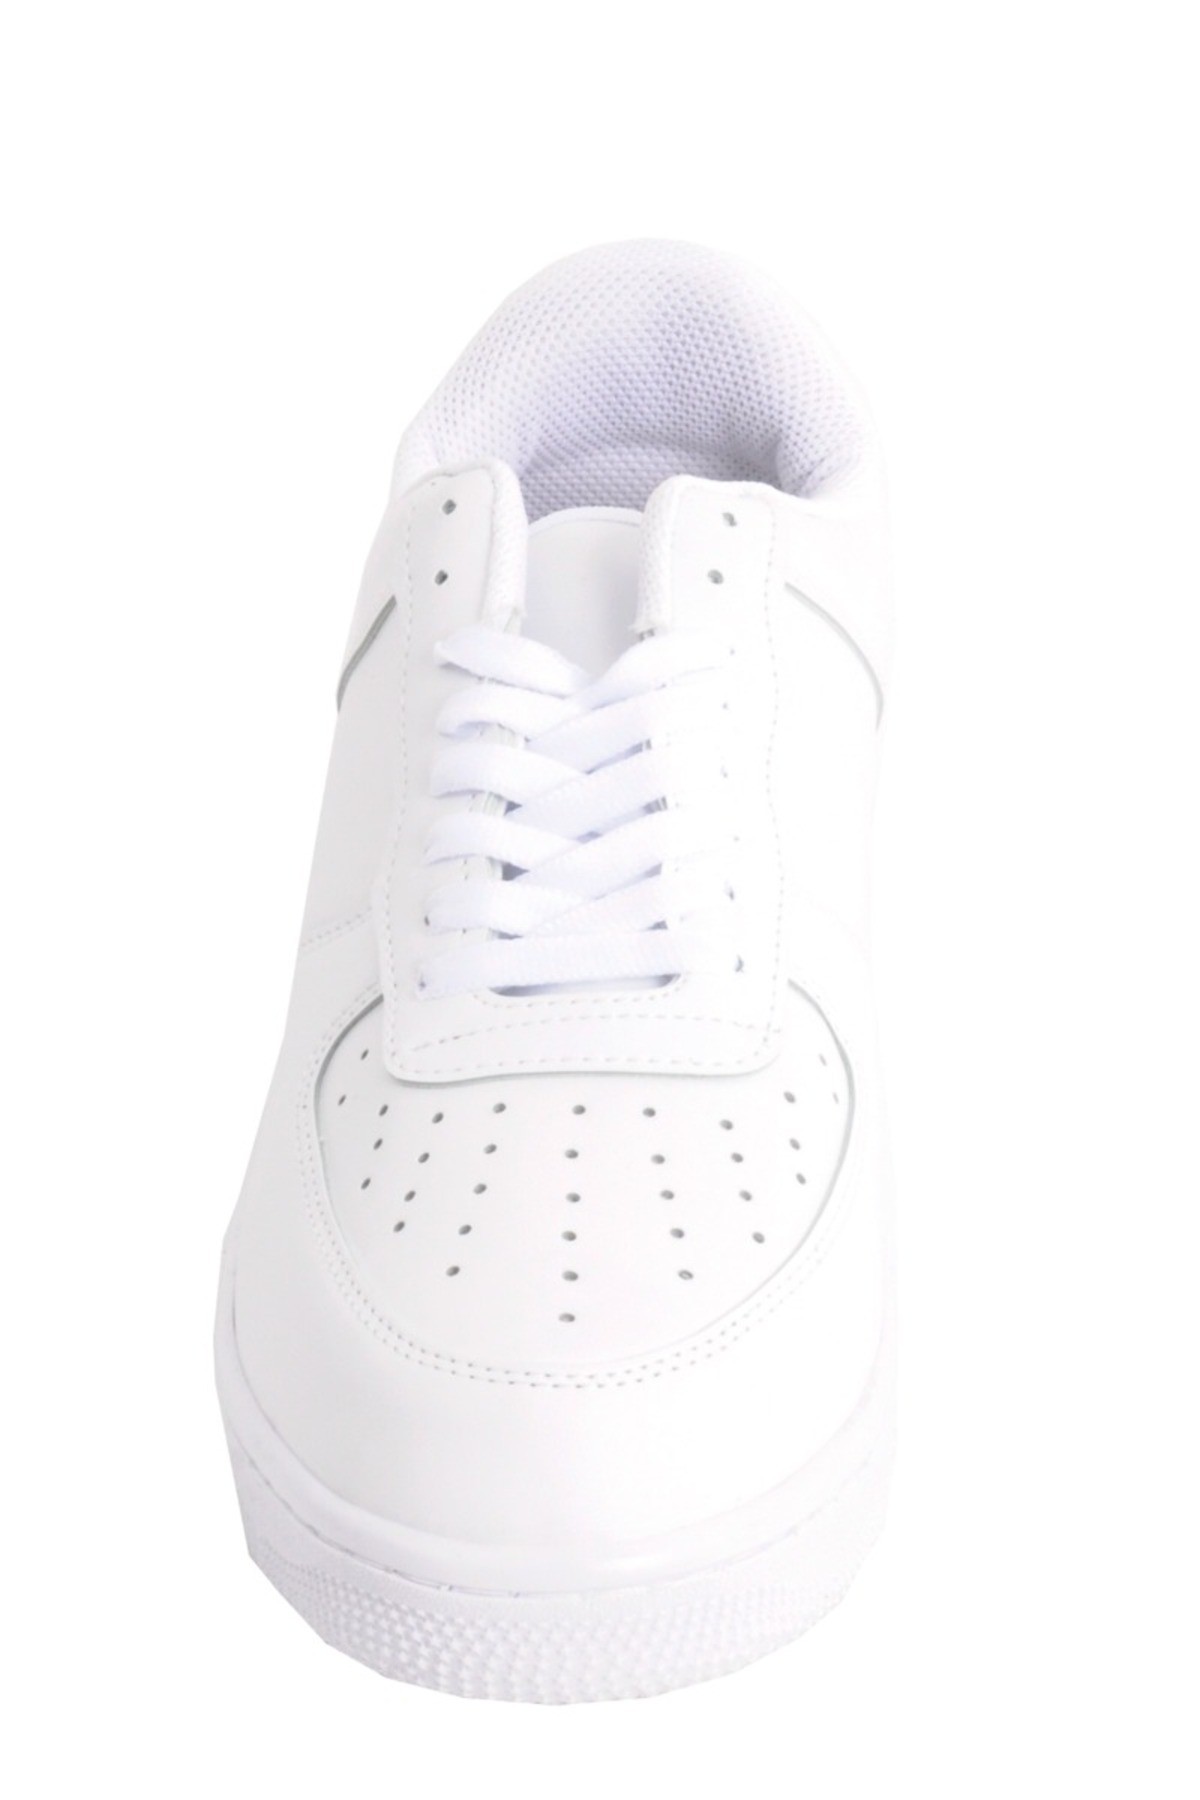 Büyük Numara Ayakkabı AIR SKIN 5027 Beyaz - beyaz